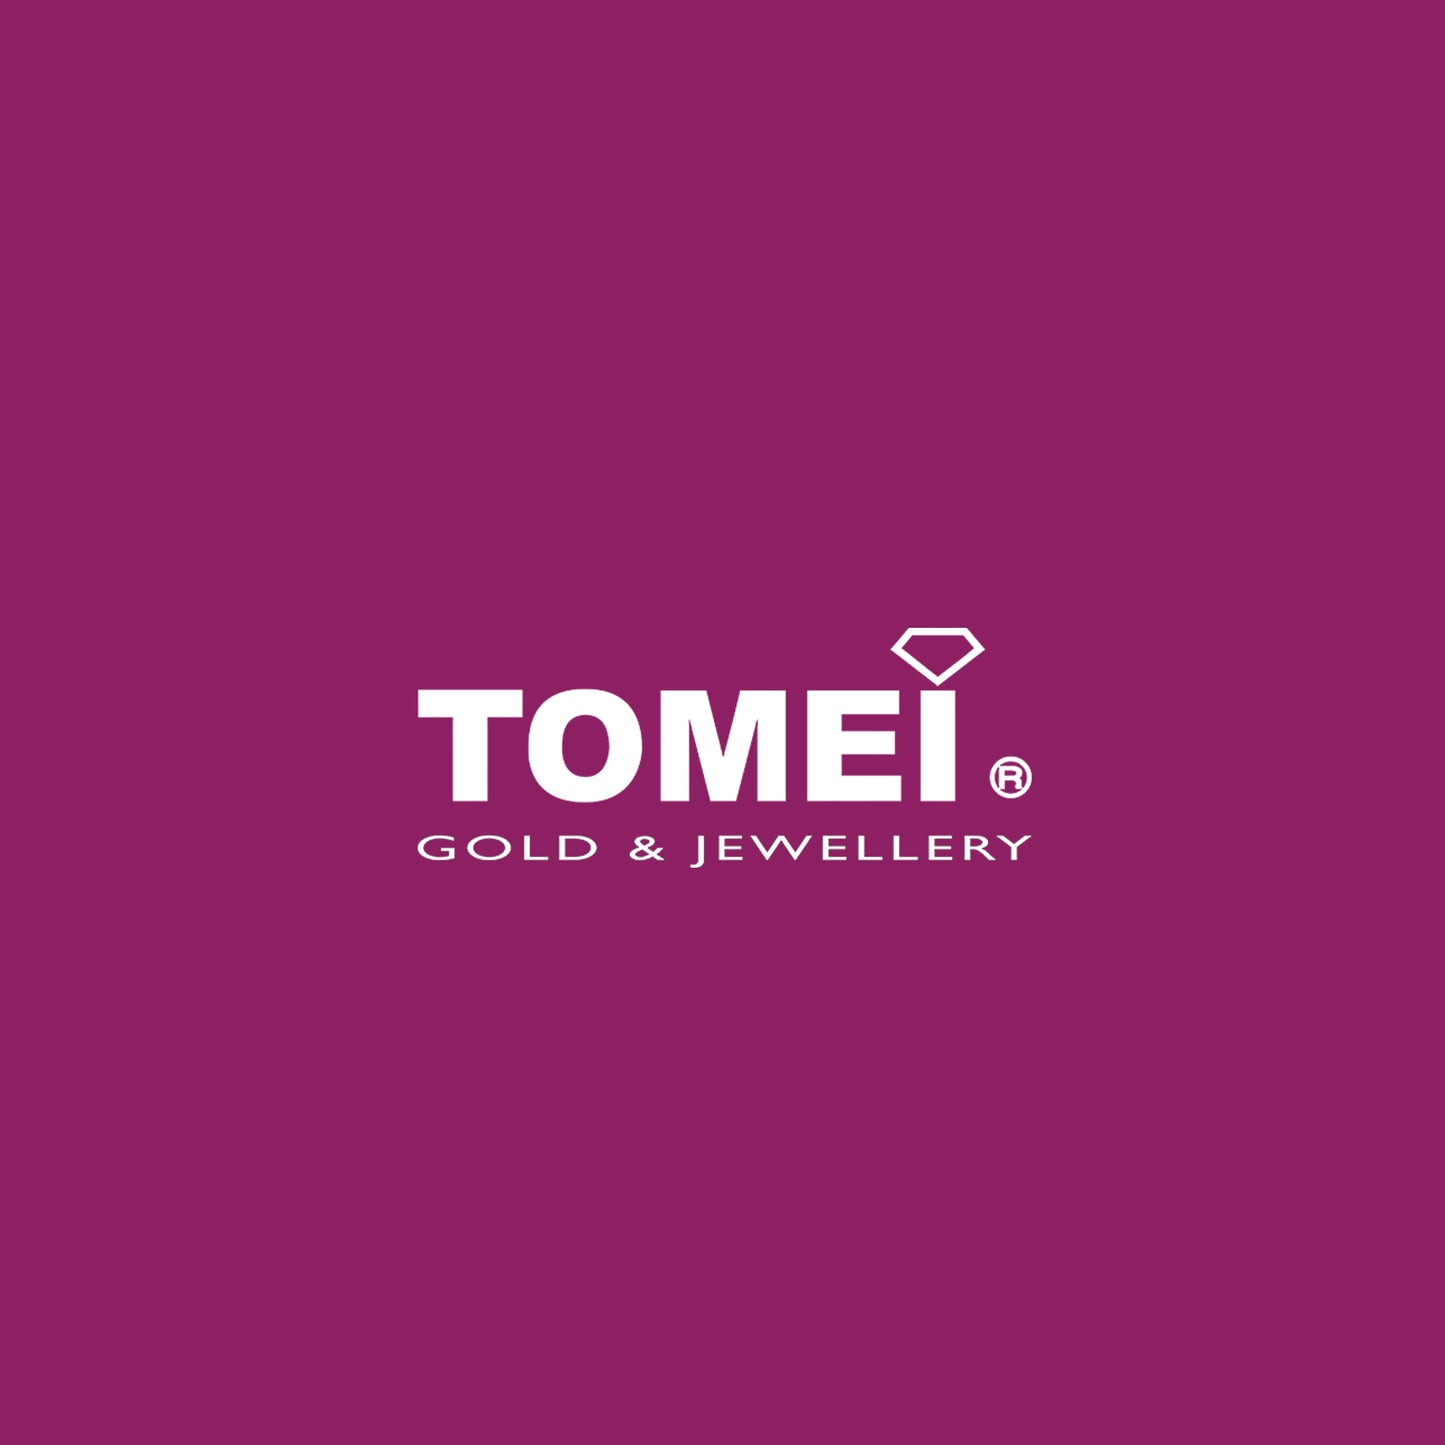 TOMEI  Ring, Diamond White Gold 750 (STR4343)